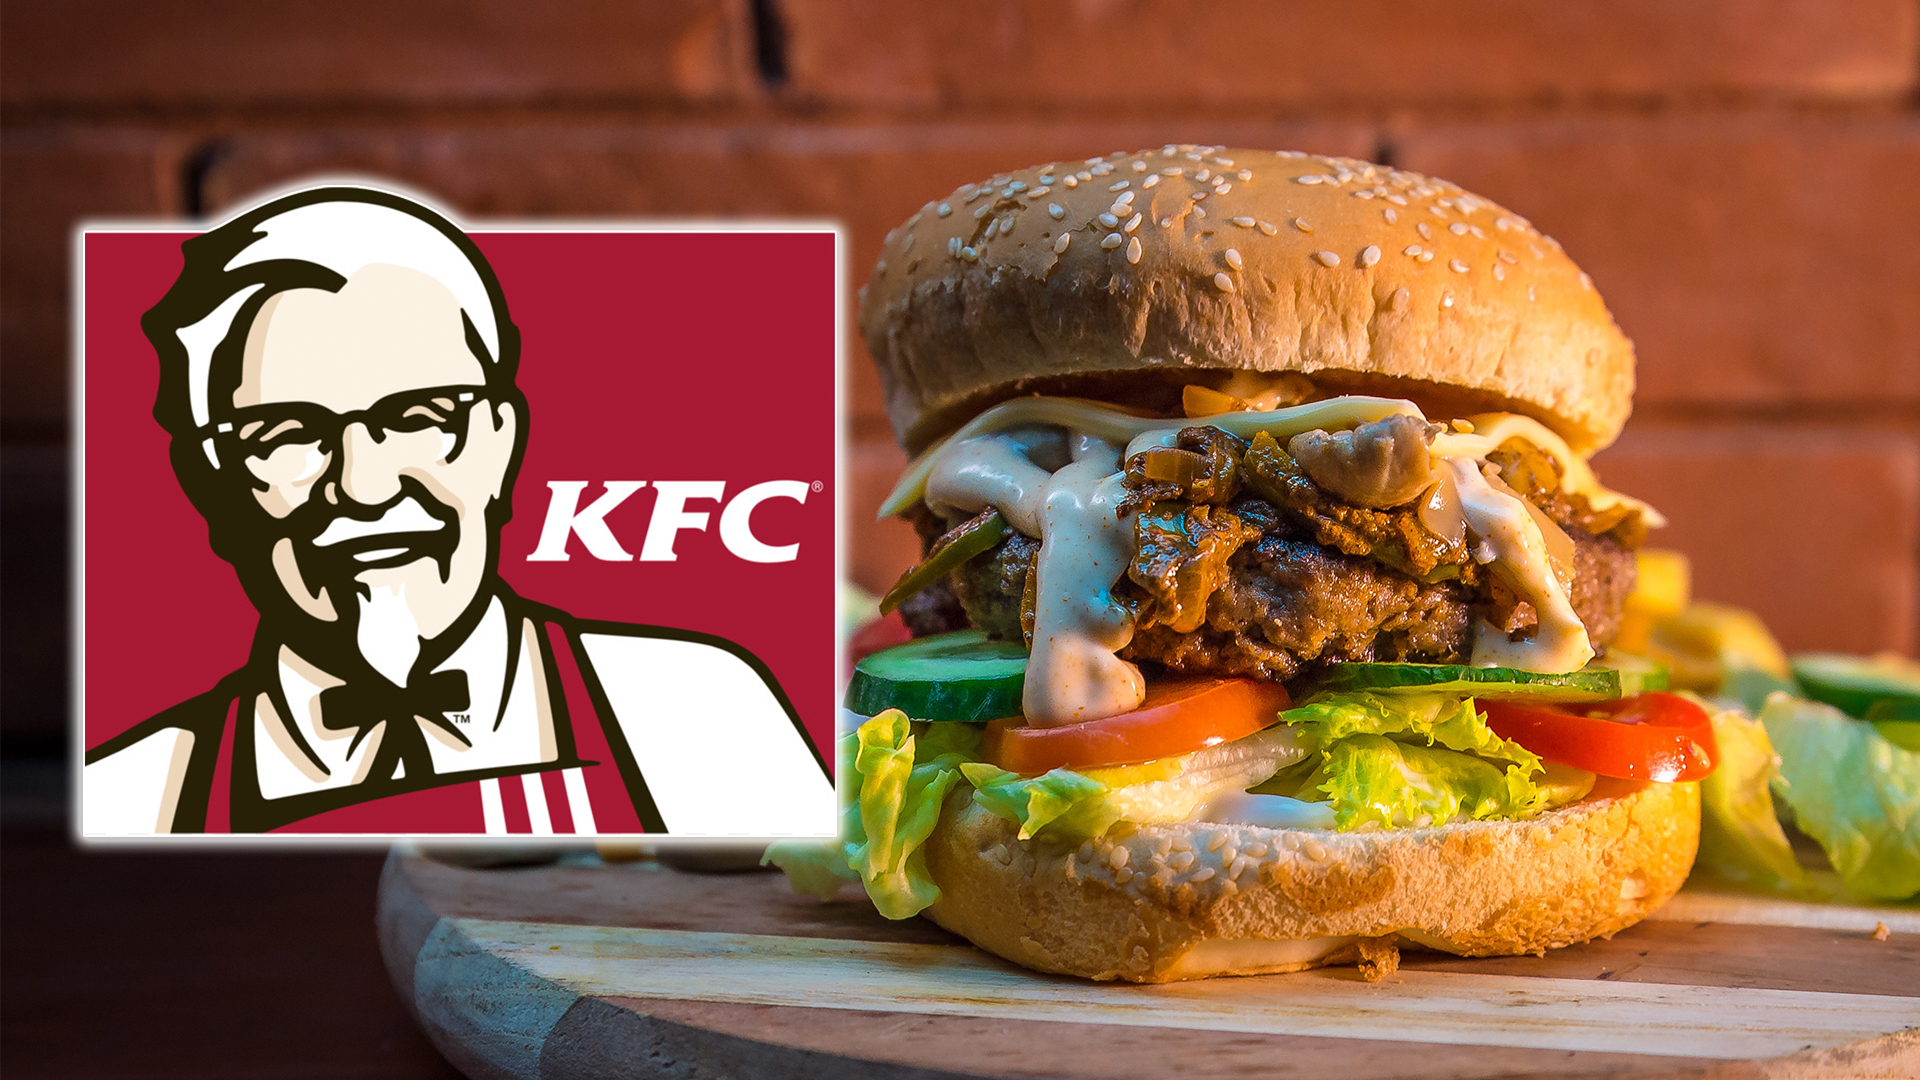 KFC UK Shuts Down to Prevent Spread of Coronavirus